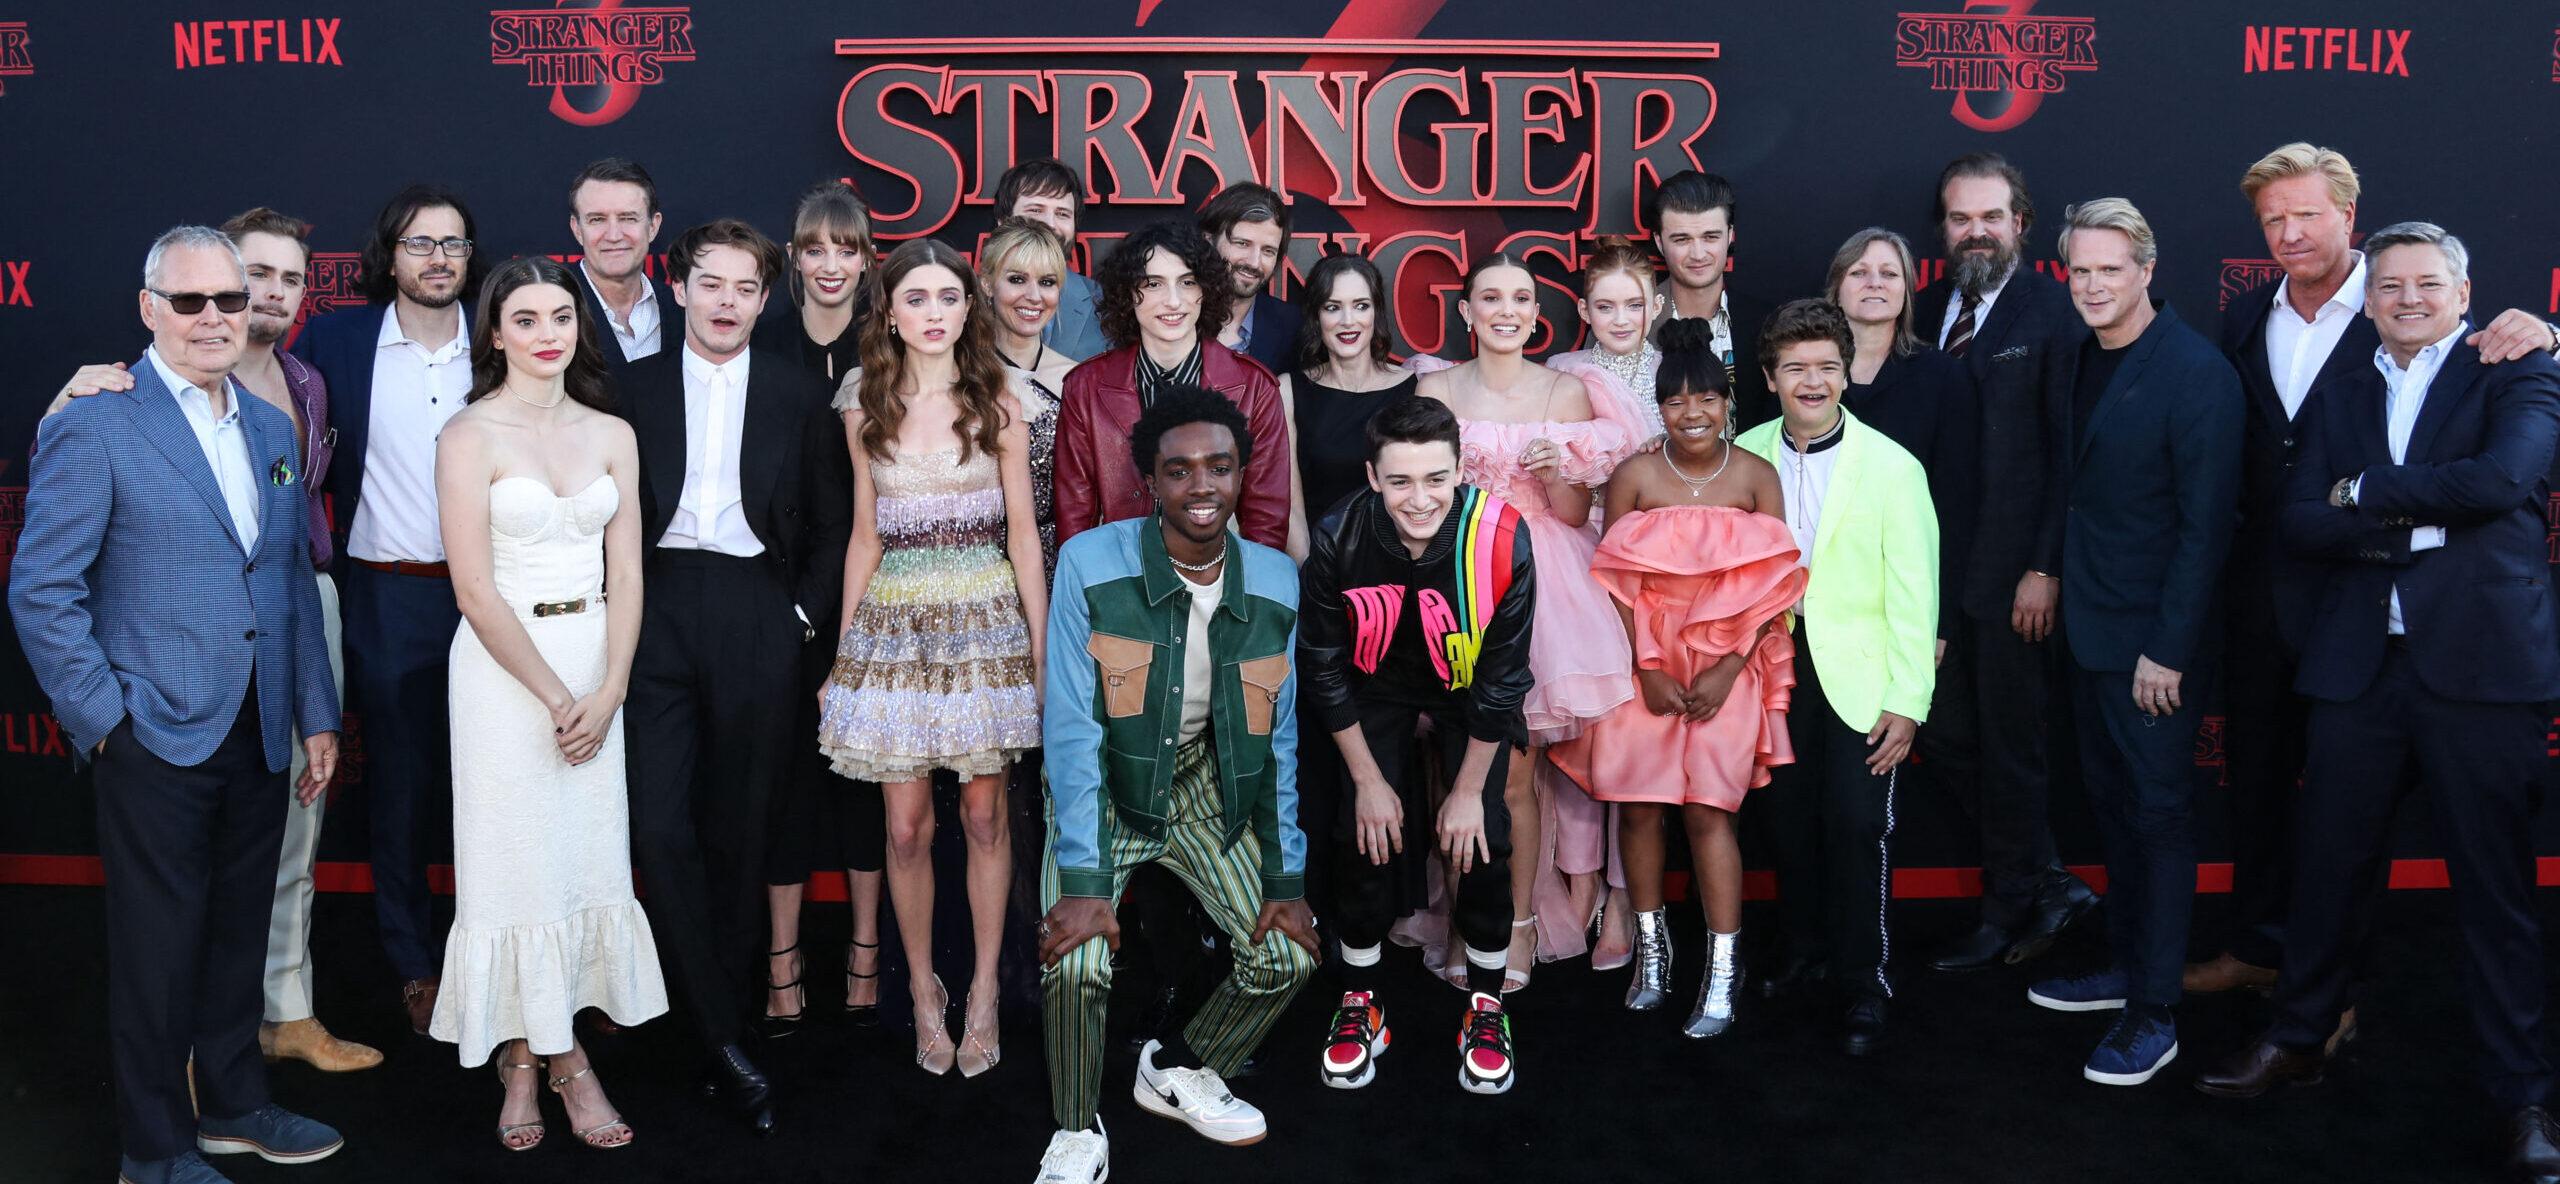 Stranger Things - World Premiere Of Netflix's 'Stranger Things' Season 3